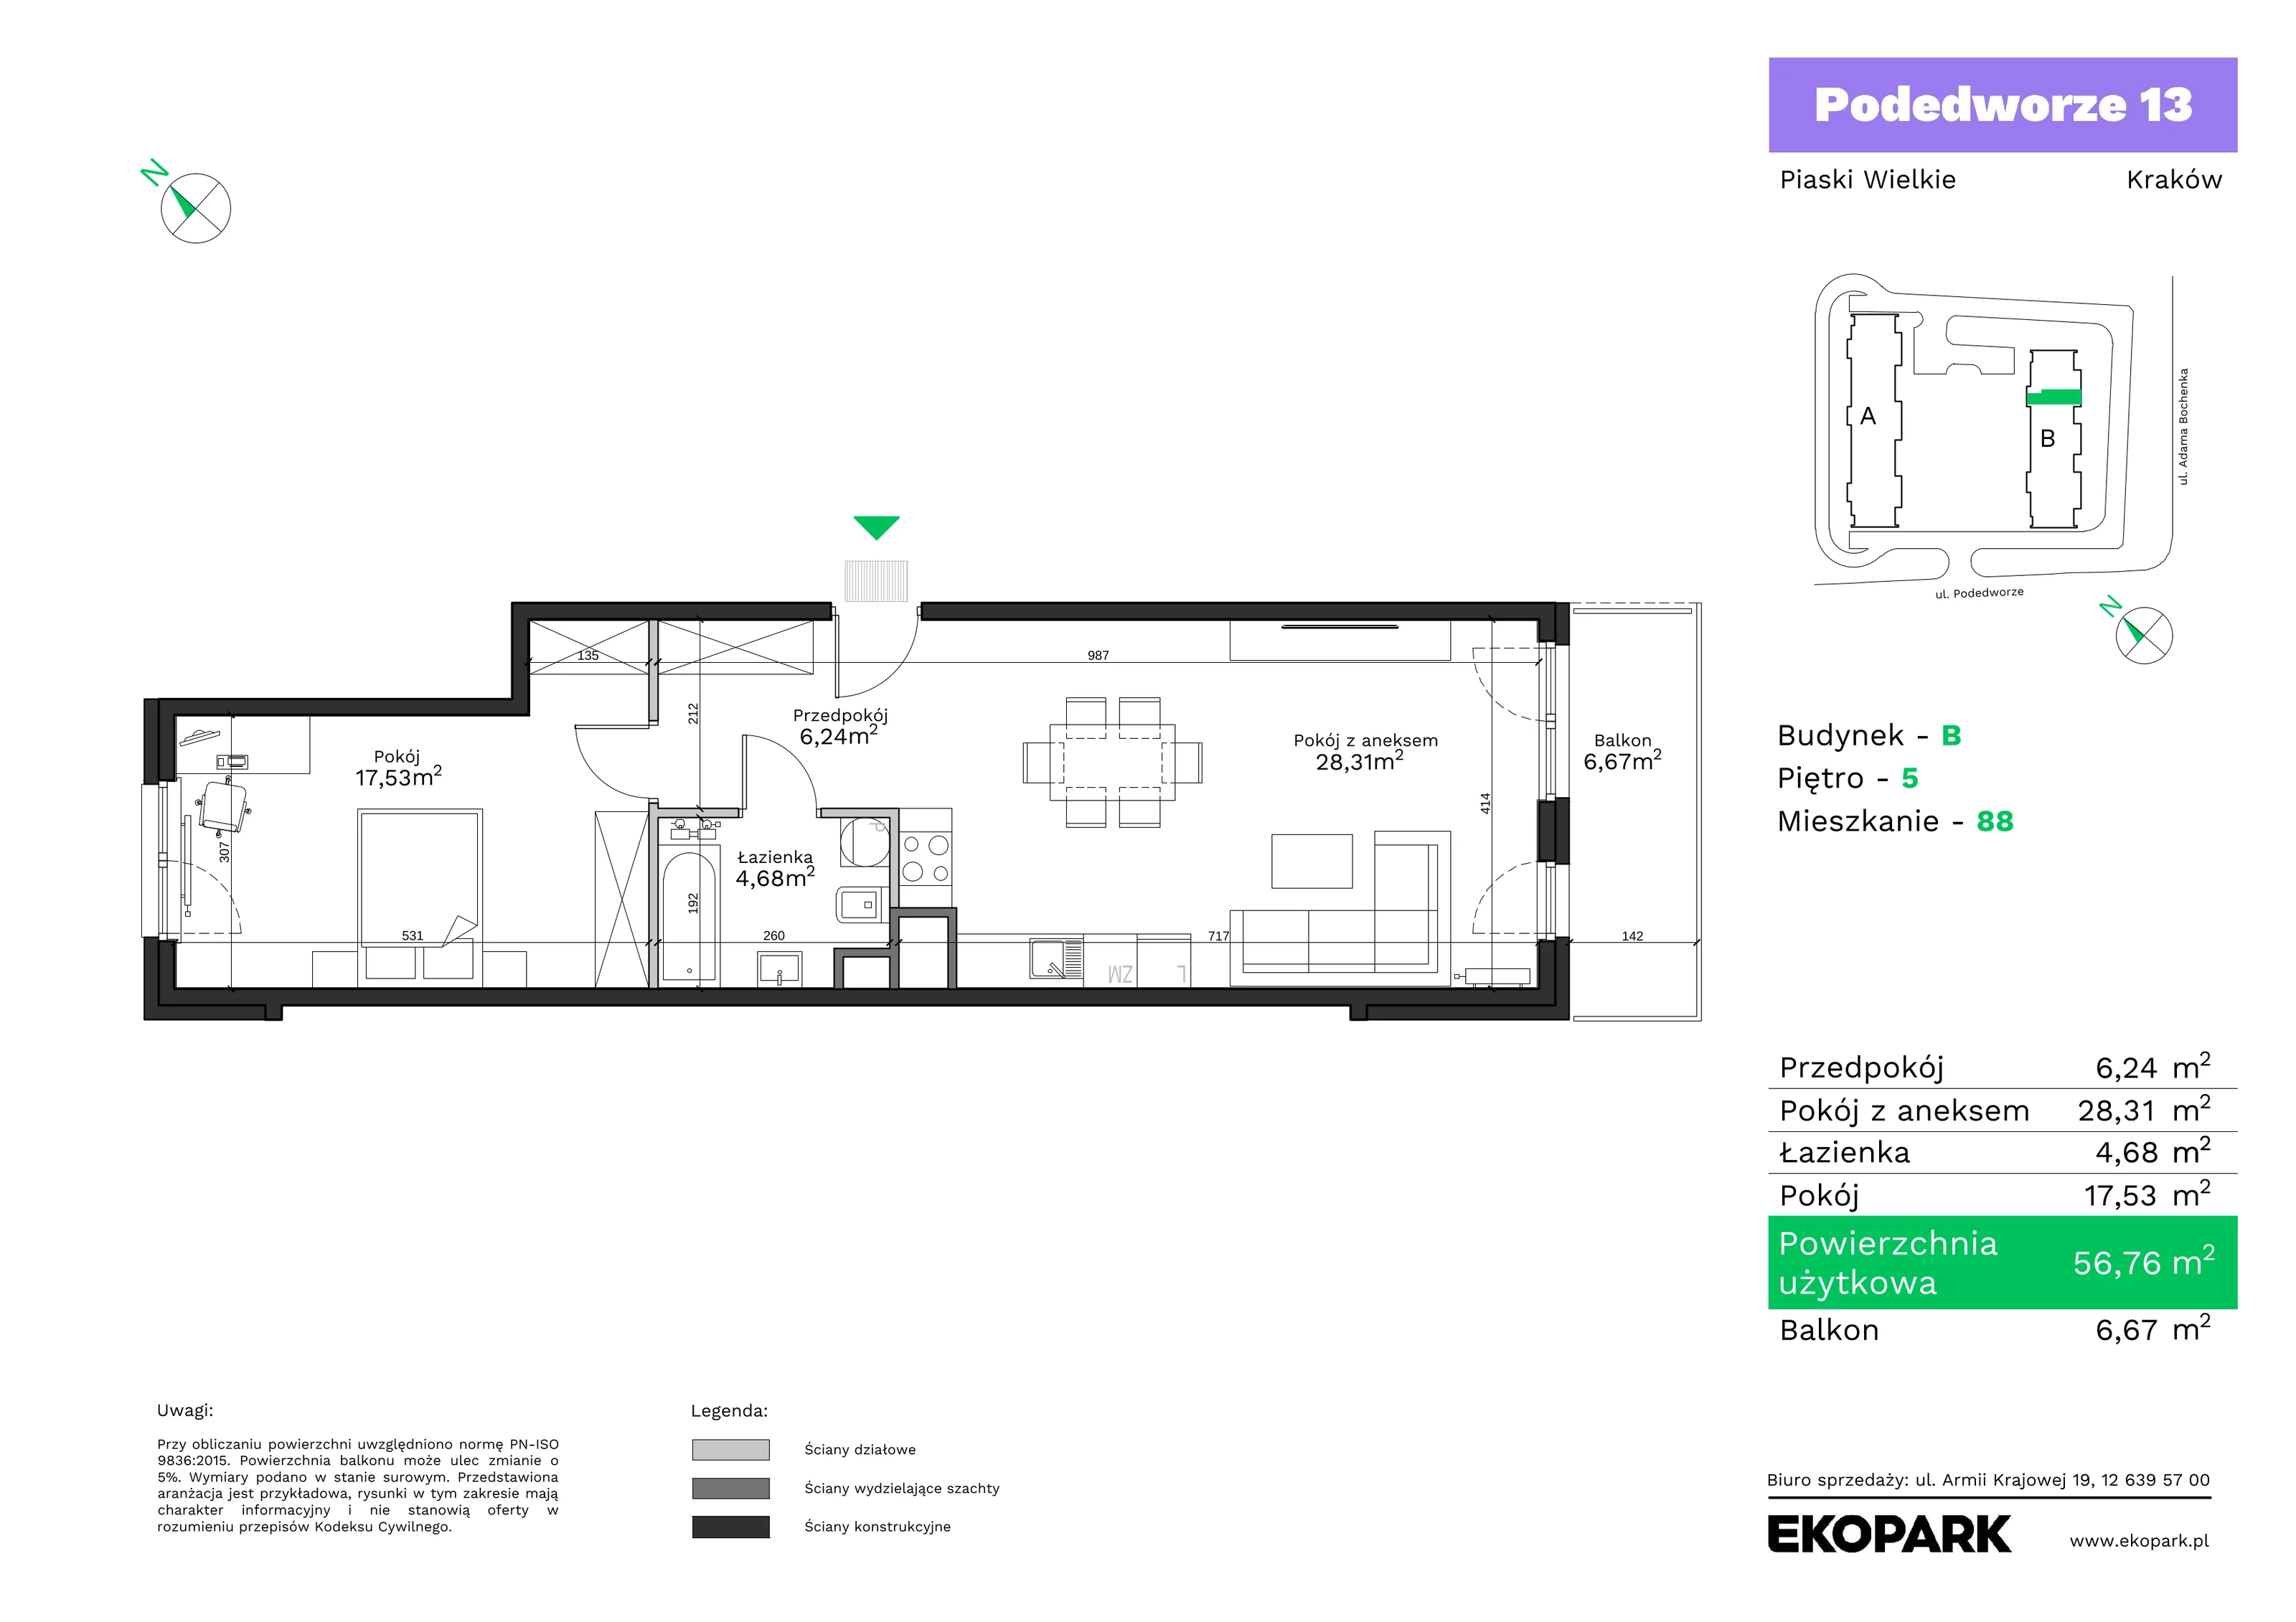 Mieszkanie 56,76 m², piętro 5, oferta nr B88, Podedworze 13, Kraków, Podgórze Duchackie, Piaski Wielkie, ul. Podedworze 13